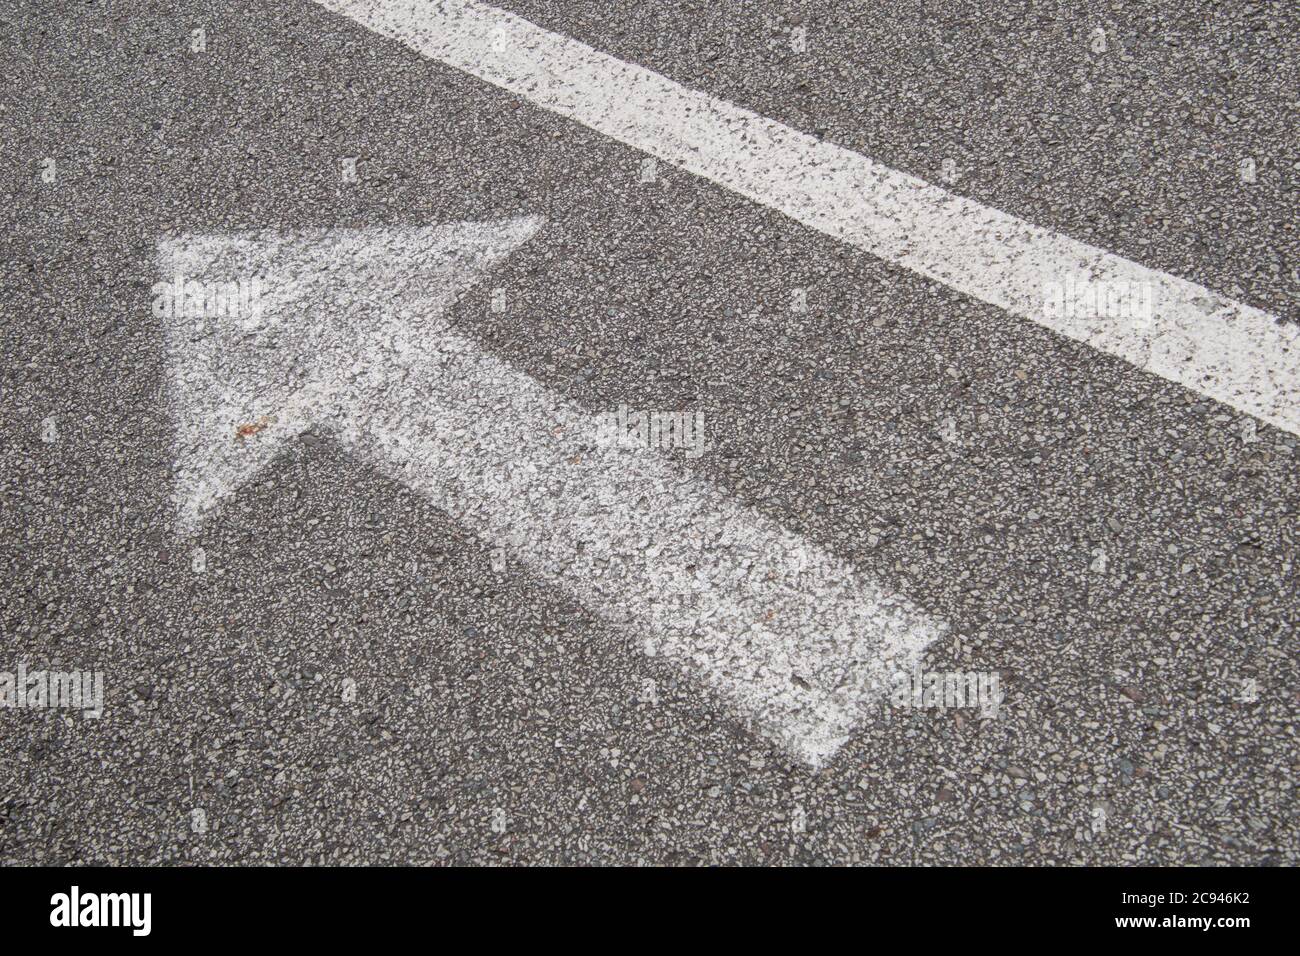 Arrow with a line, white paint on small grain asphalt. Stock Photo